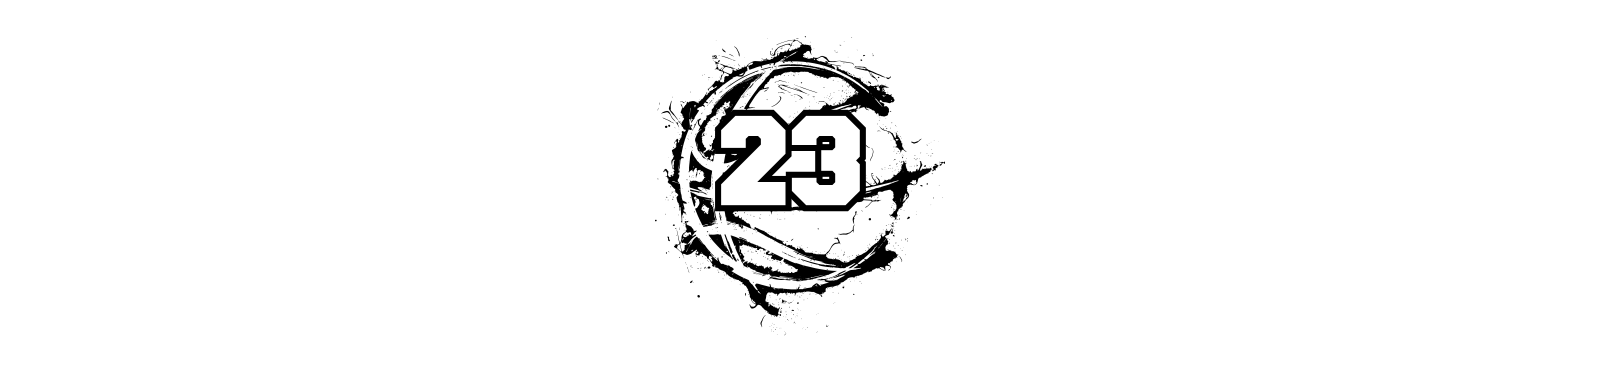 Comité basket 23 